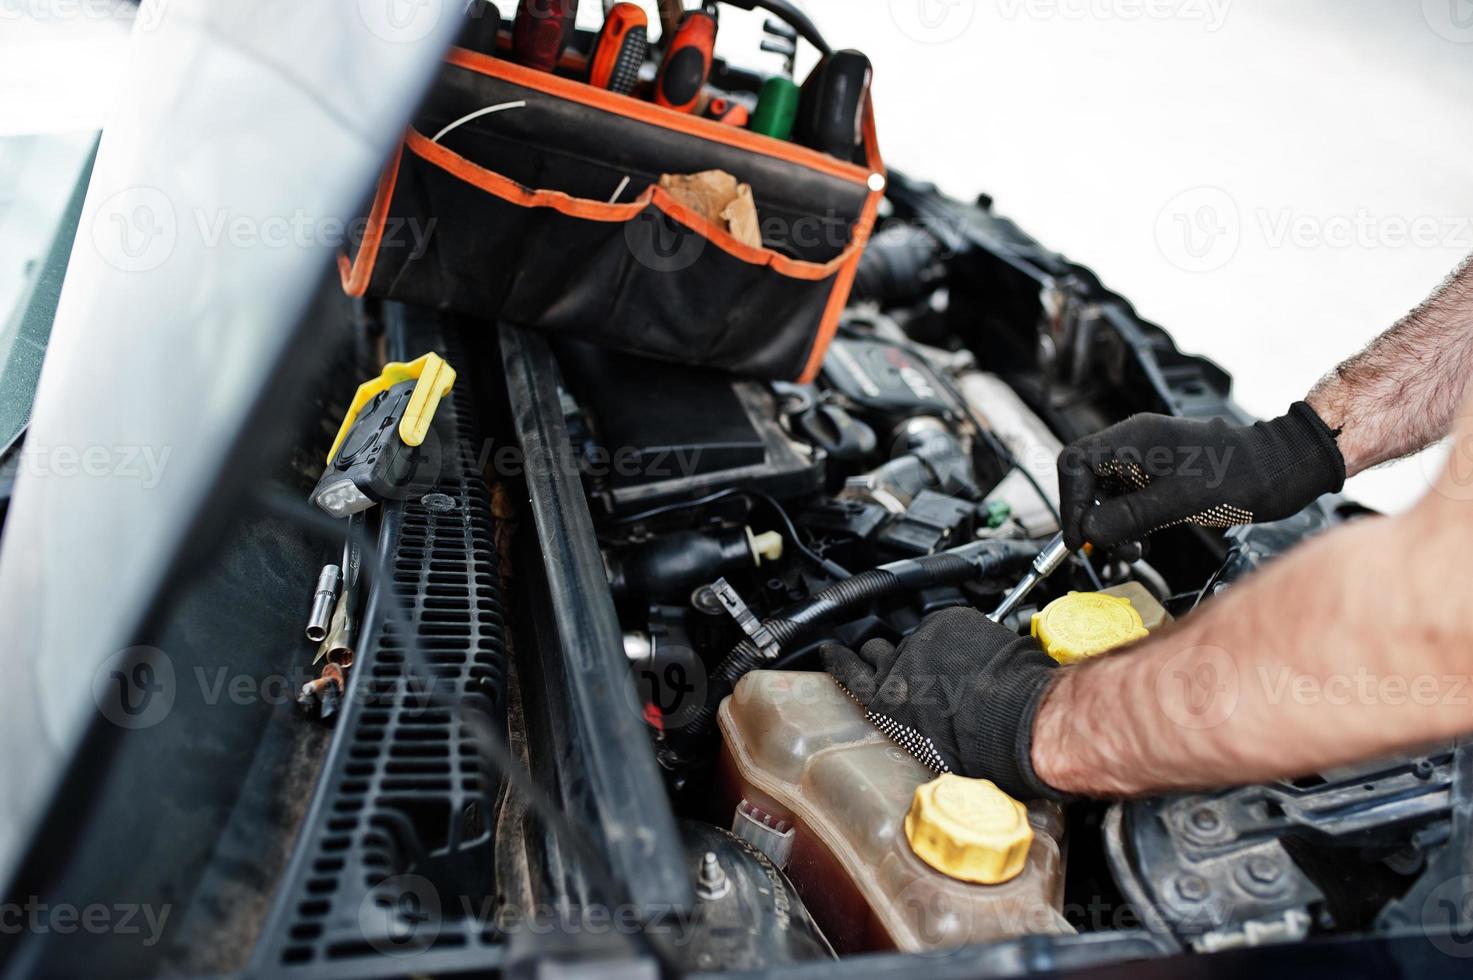 Thema Autoreparatur und -wartung. mechaniker in uniform, der im autoservice arbeitet und den motor überprüft. foto